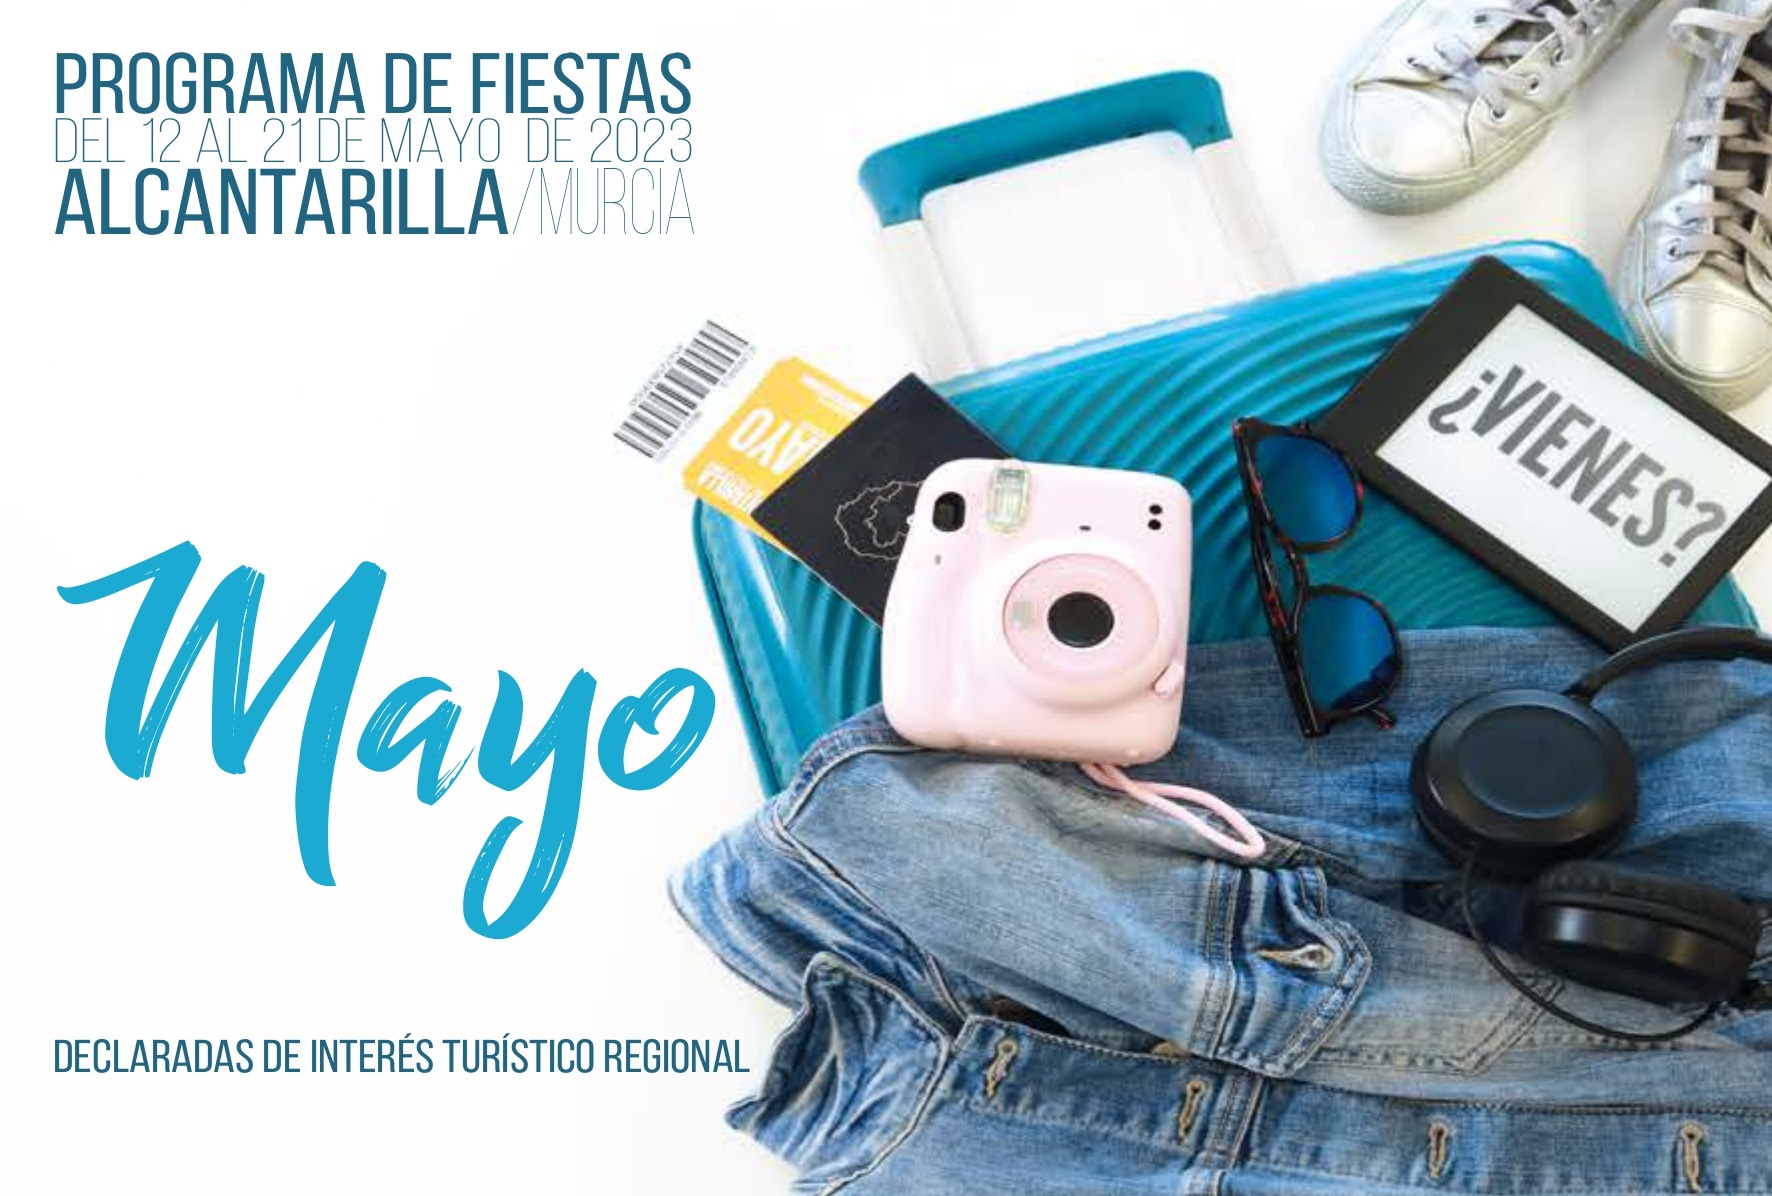 ALCANTARILLA | Fiestas de Mayo 2023 del 12 al 21 con música, gastronomía, folklore y atracciones infantiles